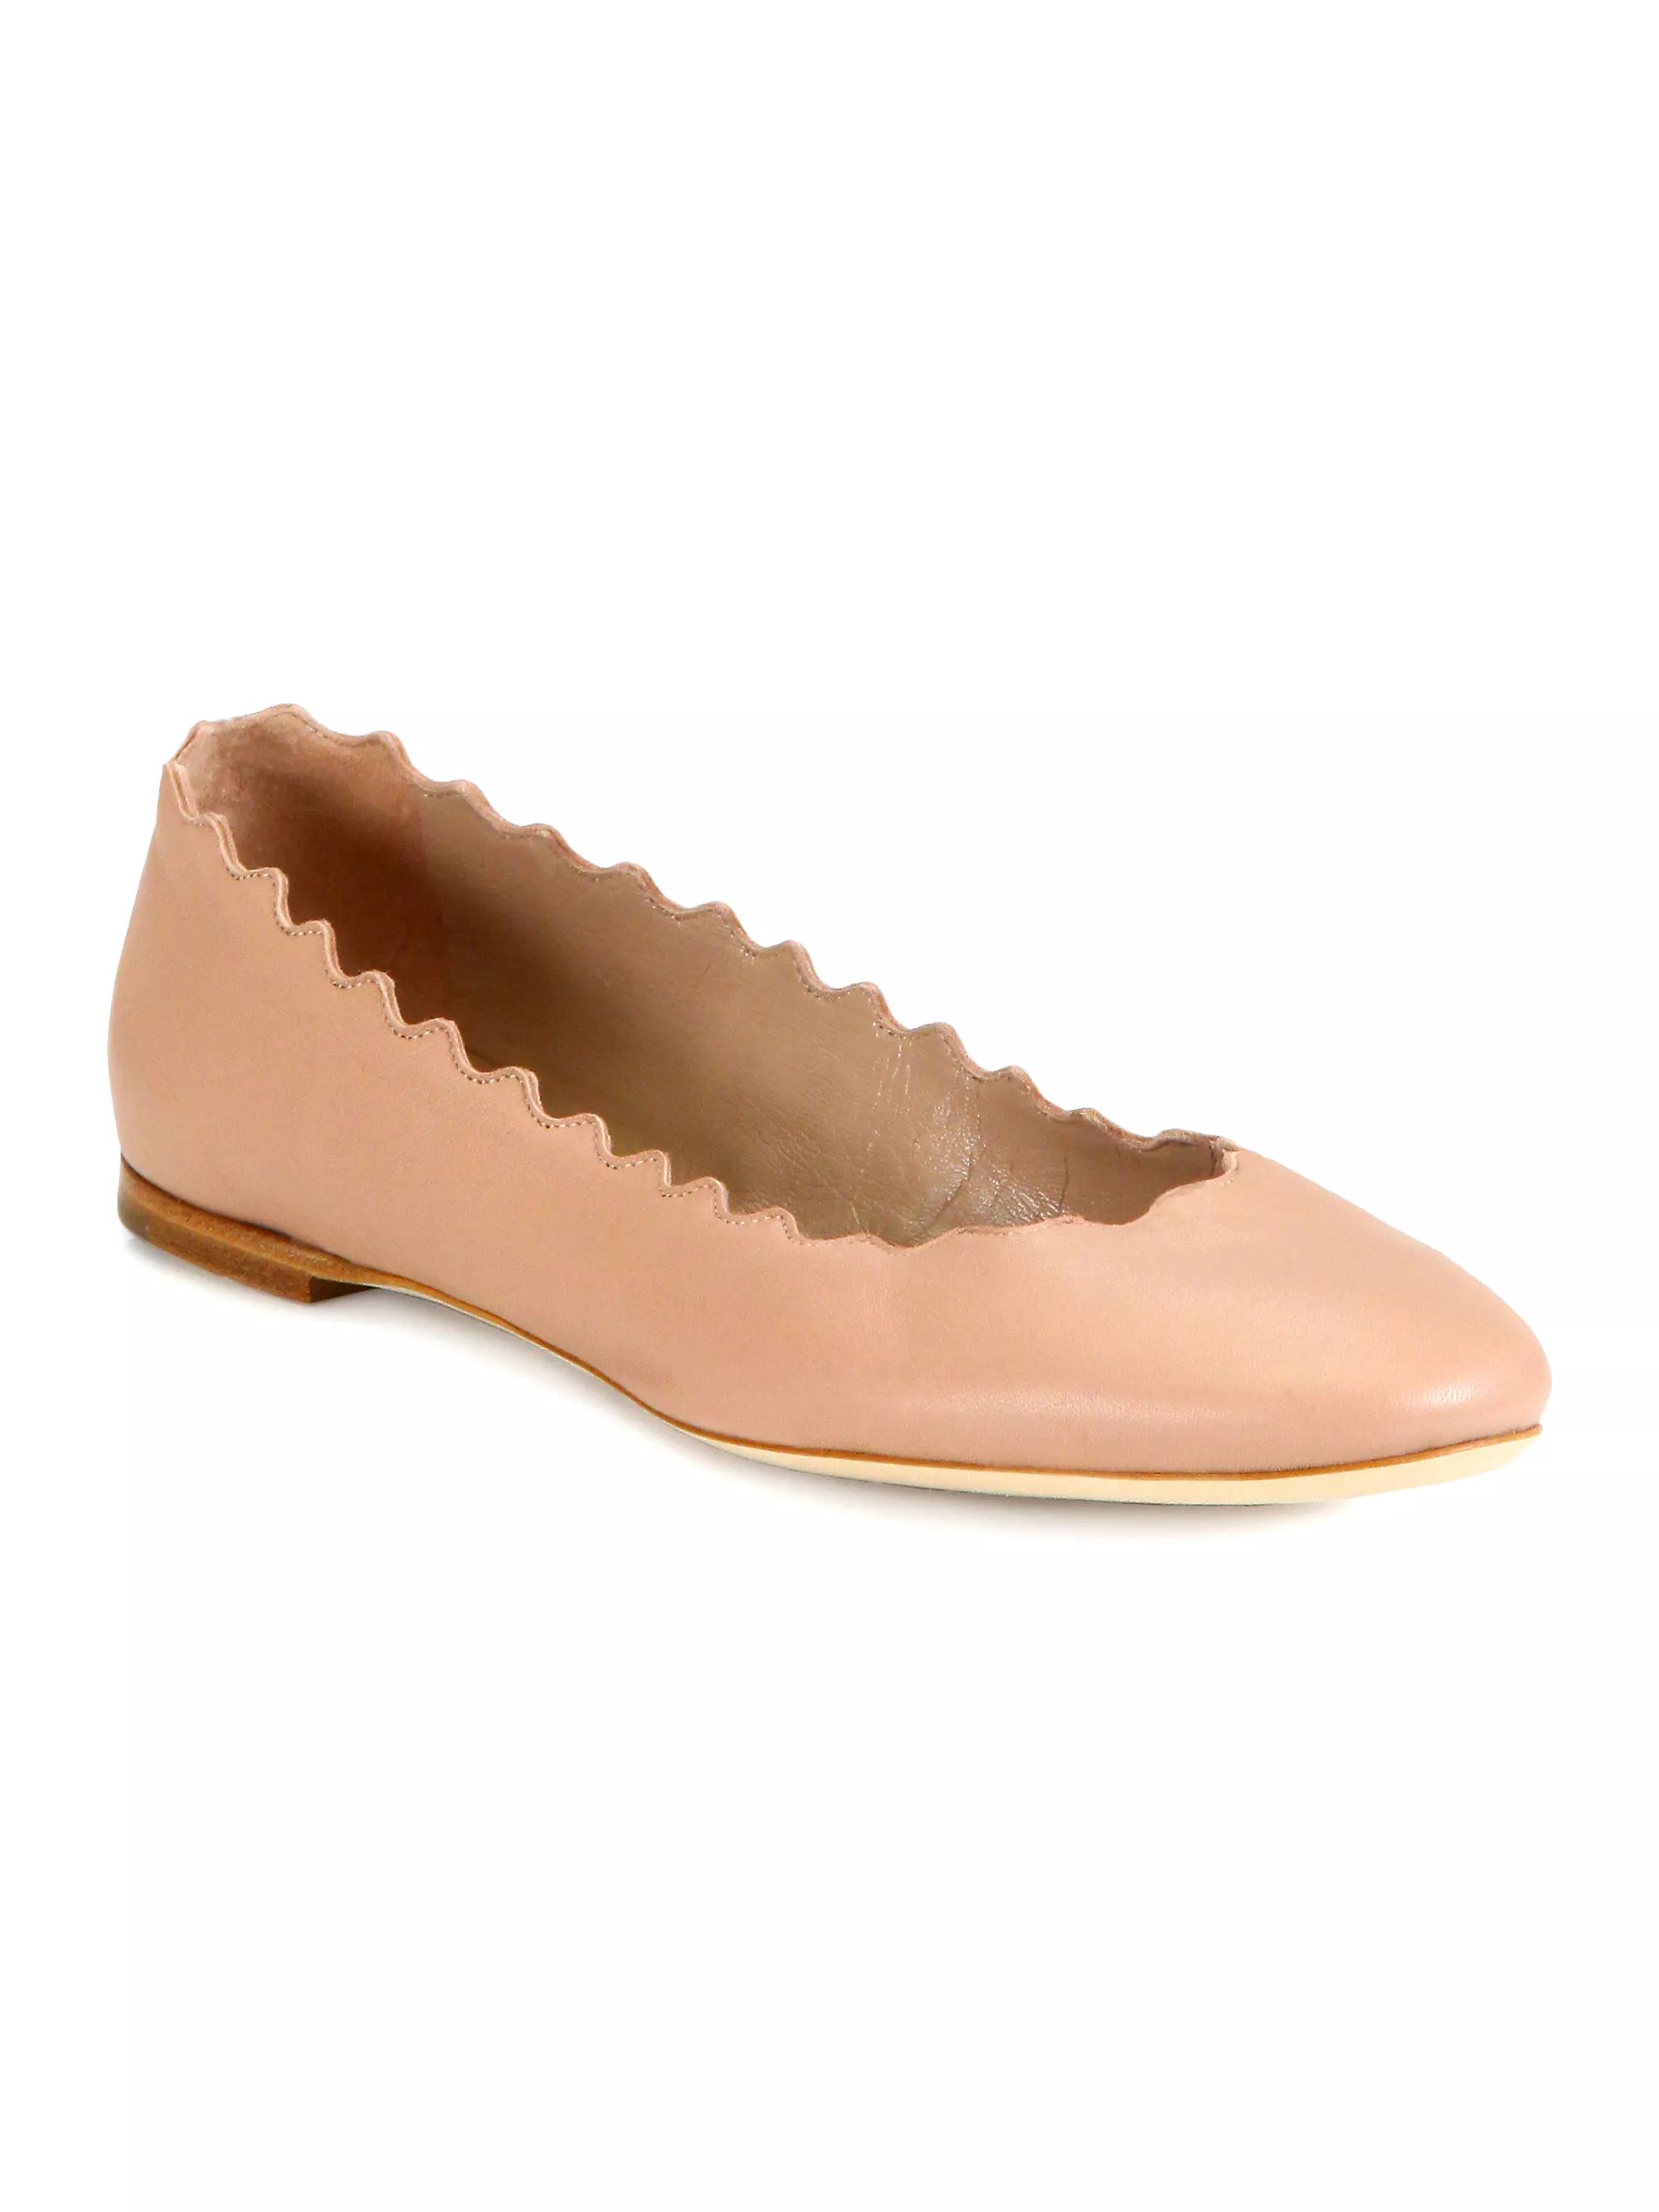 Shop Chloé Lauren Leather Ballet Flats | Saks Fifth Avenue | Saks Fifth Avenue